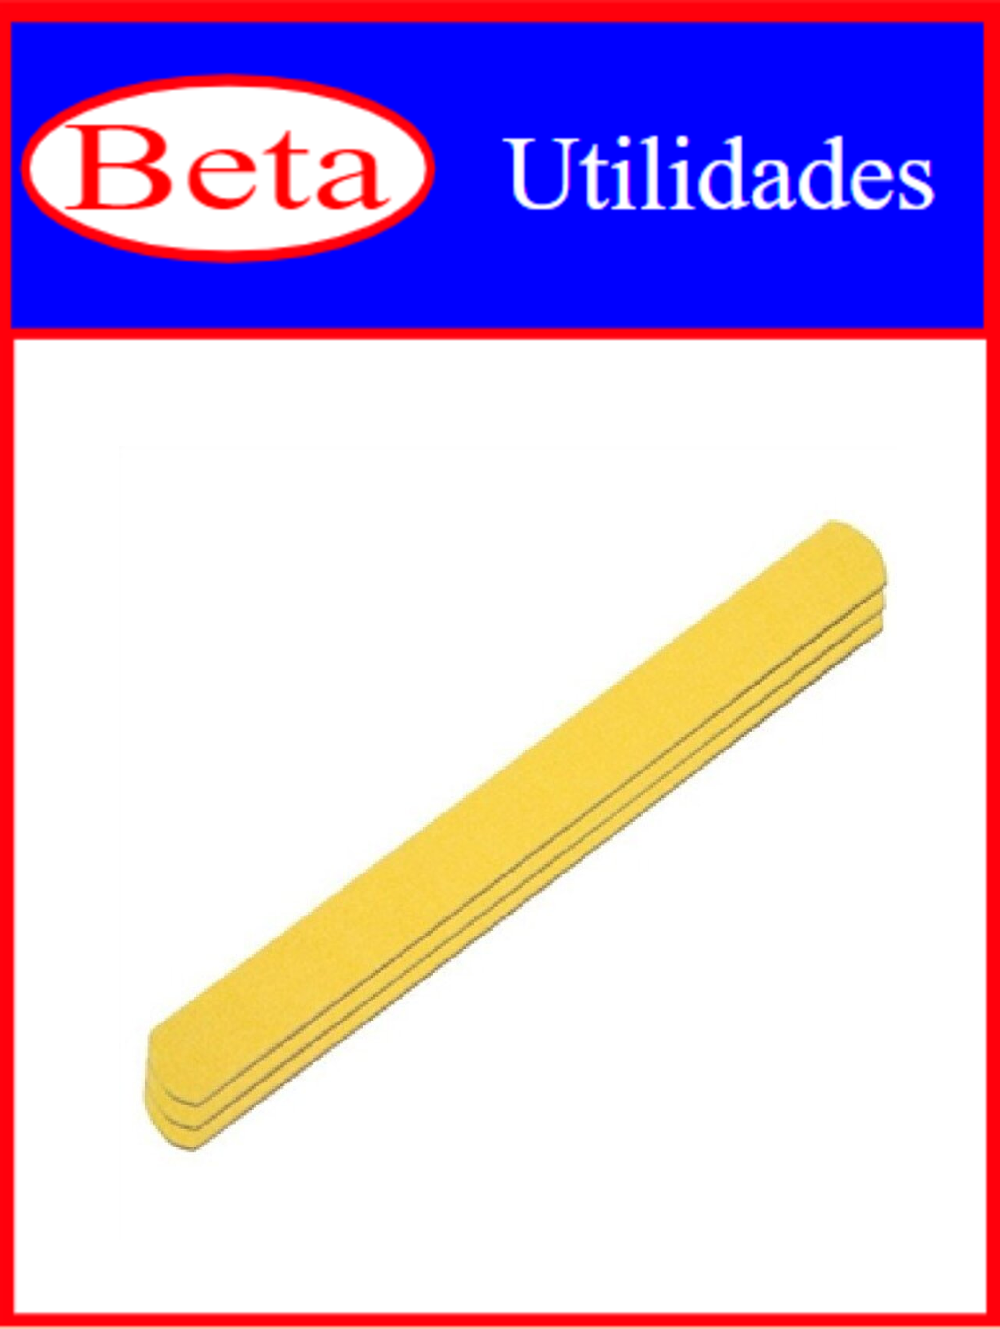 7898021403459 - BETA UTILIDADES LIXA P/ UNHAS C/ 6UND